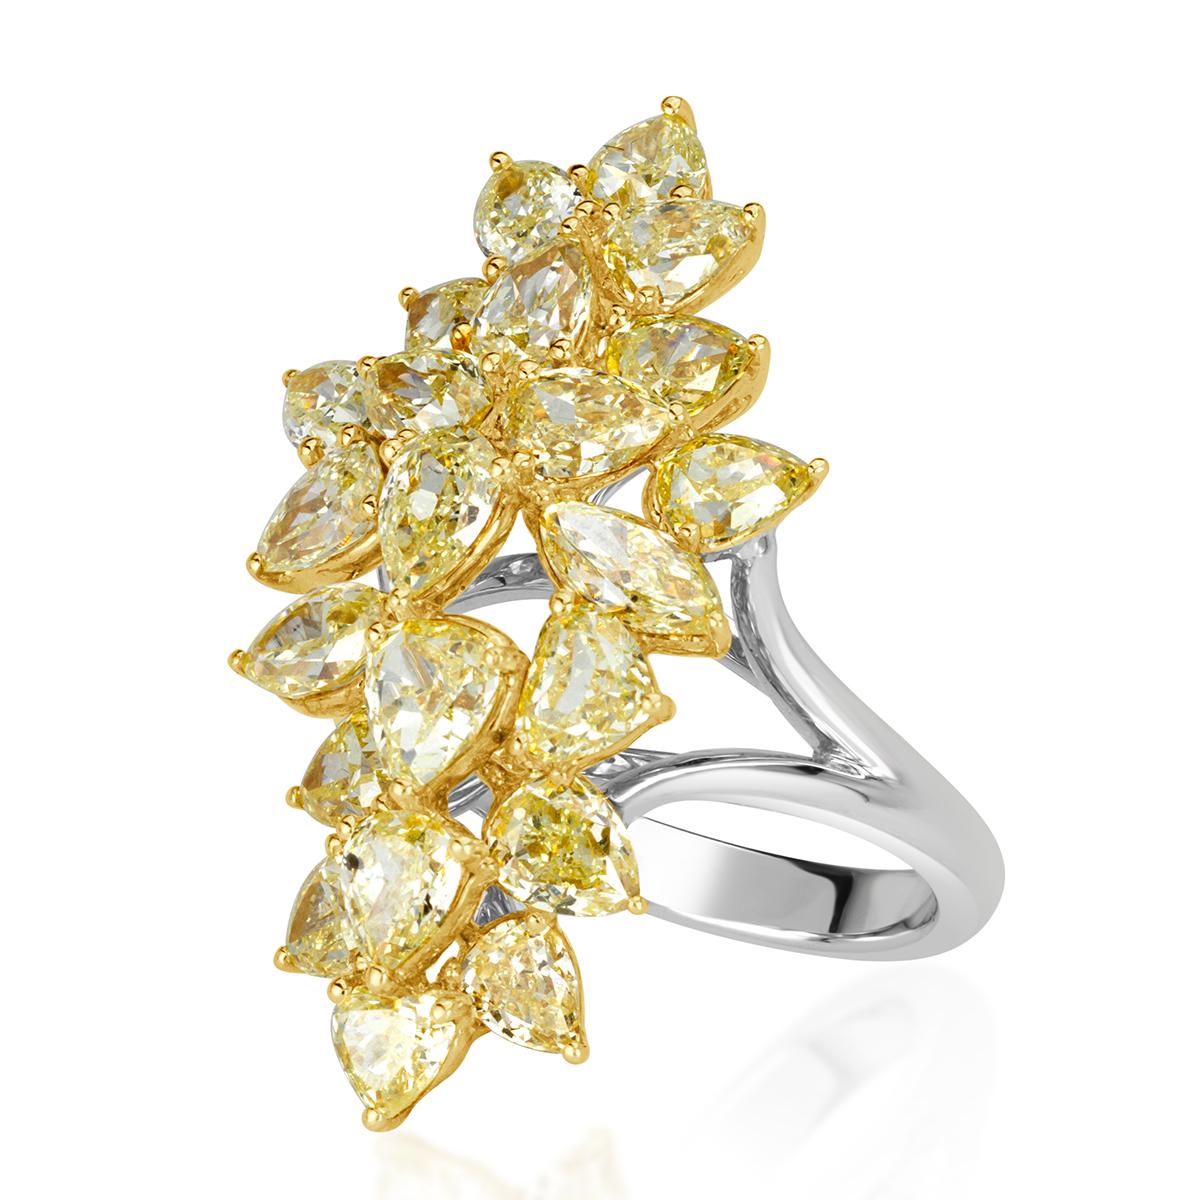 Cette ravissante bague à grappes bicolore présente 5,59 ct de diamants jaunes de fantaisie de différentes formes, notamment des diamants en forme de marquise, de poire et de cœur. Les diamants, d'une pureté de VS1-VS2, sont sertis dans de l'or jaune